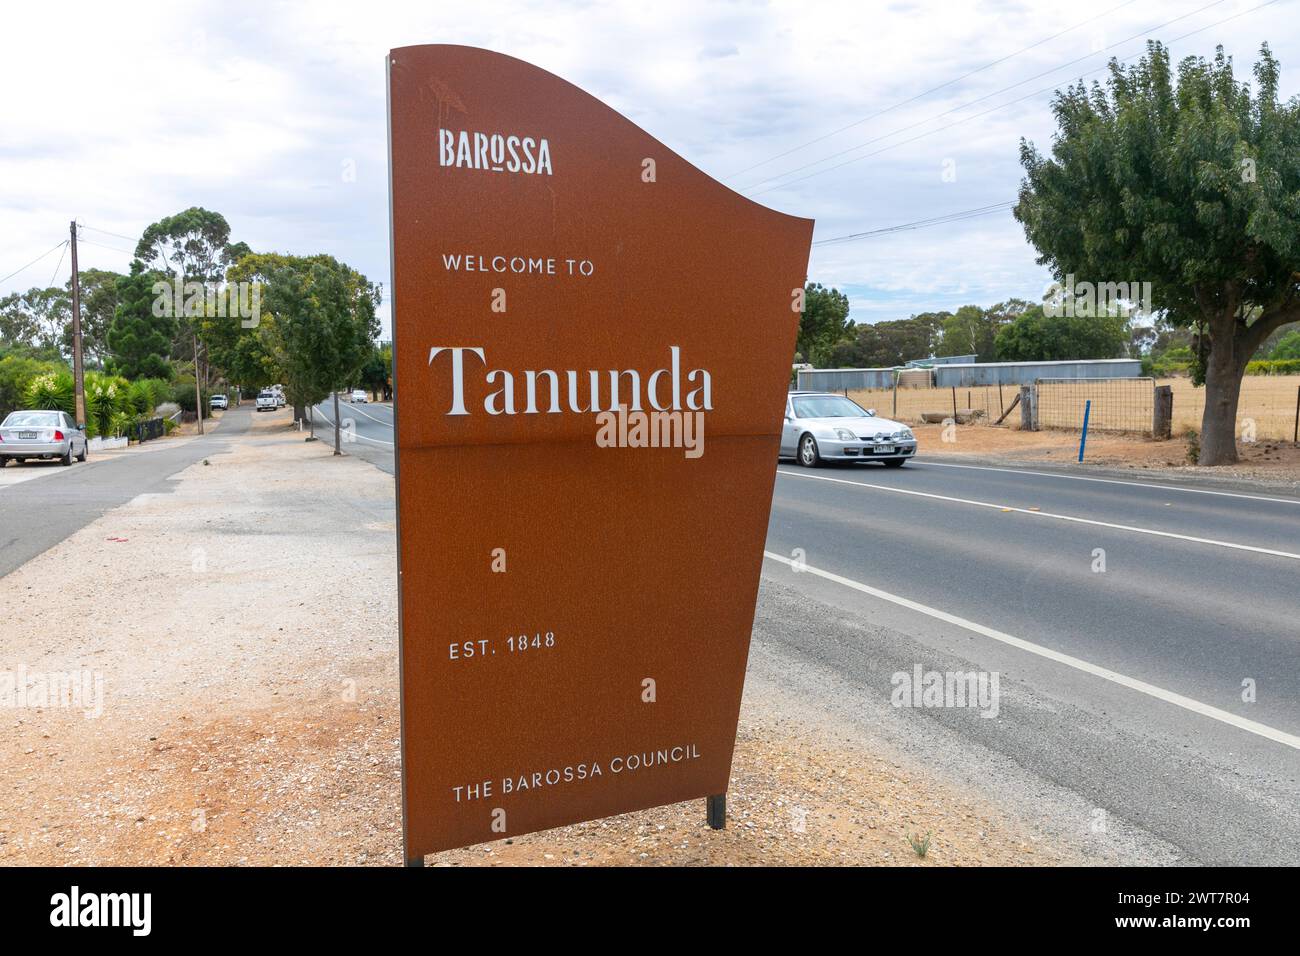 Tanunda nella Barossa Valley, metallo marrone benvenuto a Tanunda cartello del Barossa council, una città fondata nel 1848, Australia meridionale Foto Stock